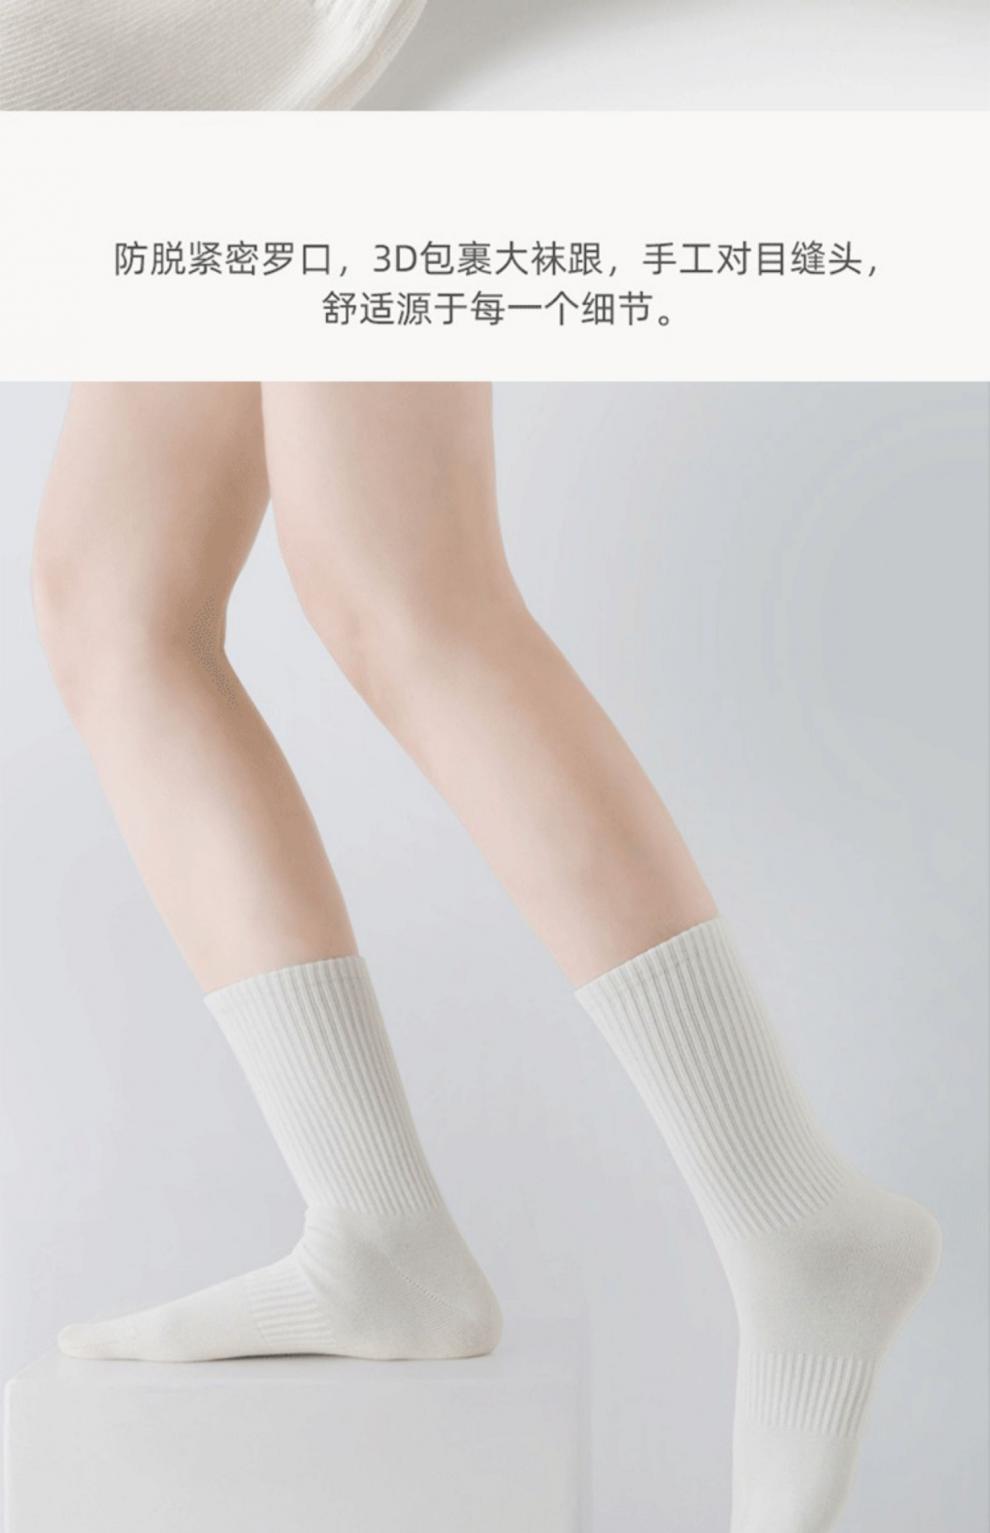 春夏男士女士纯色黑色白色长短船袜三种长度运动穿搭时尚百搭潮袜详情17